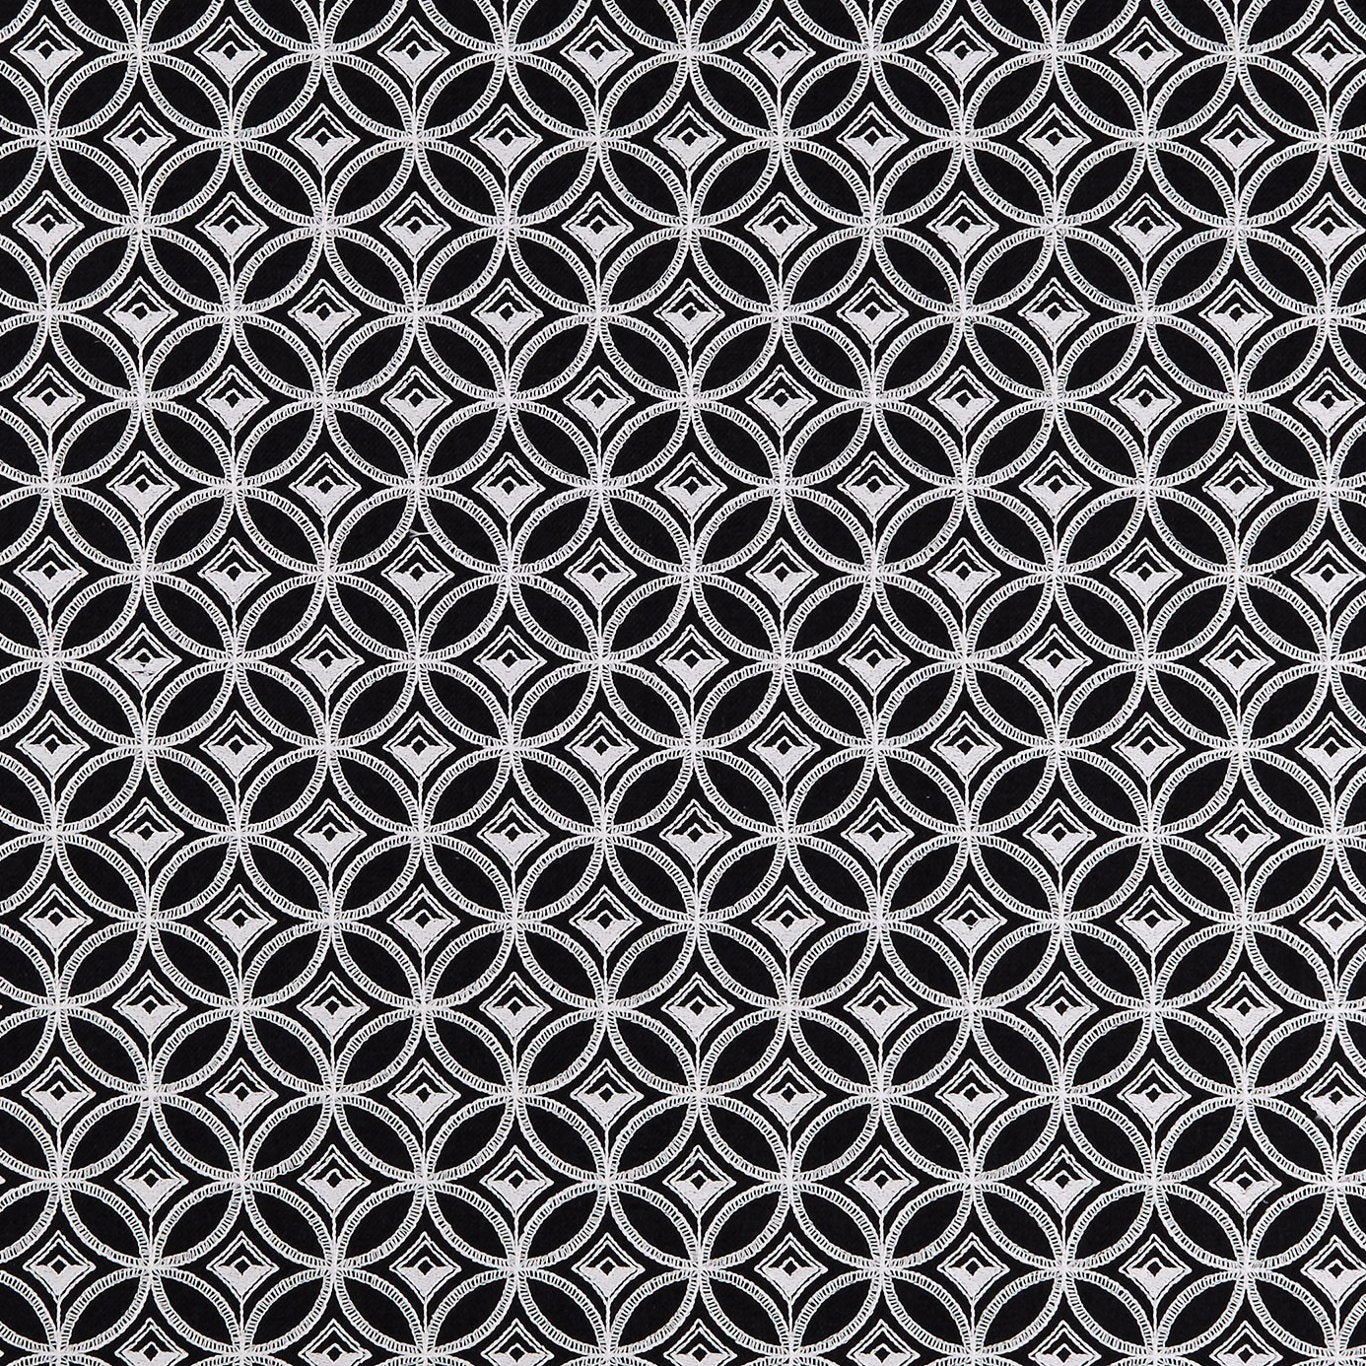 Bw1009 Fabric by Clarke & Clarke - F0881/01 - Black/White